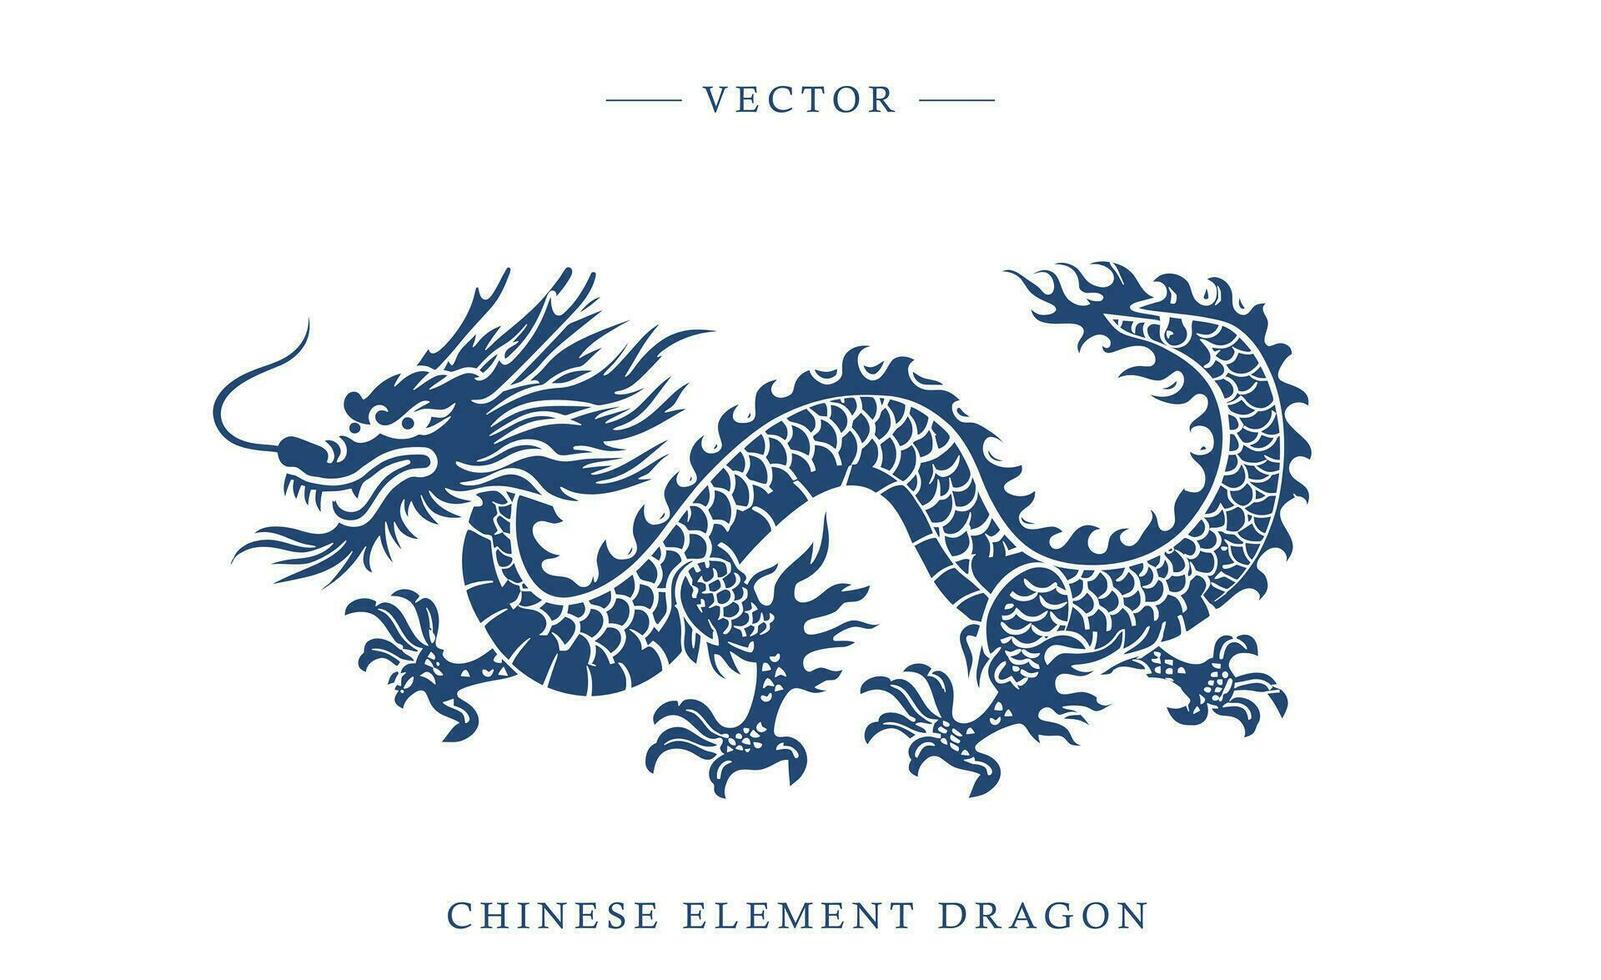 Blau und Weiß Porzellan Chinesisch Drachen Muster vektor